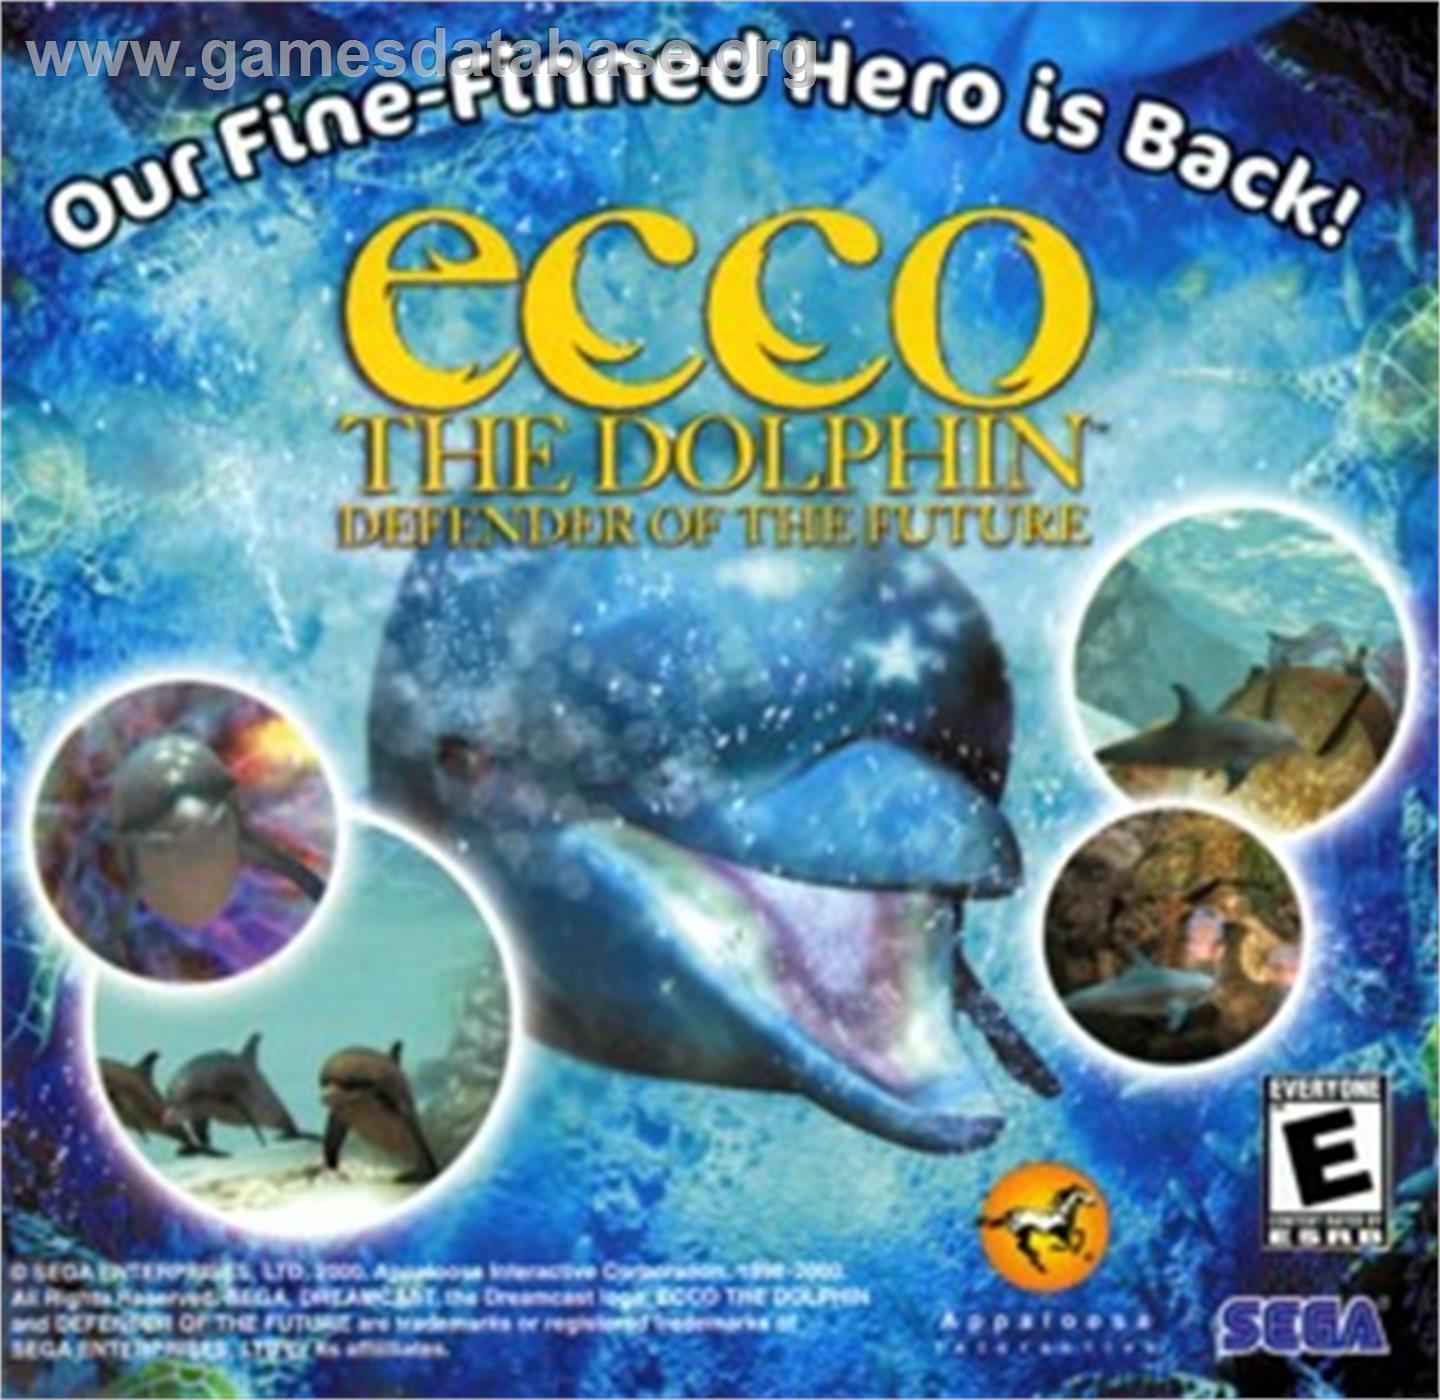 Ecco the Dolphin: Defender of the Future - Sega Dreamcast - Artwork - Advert